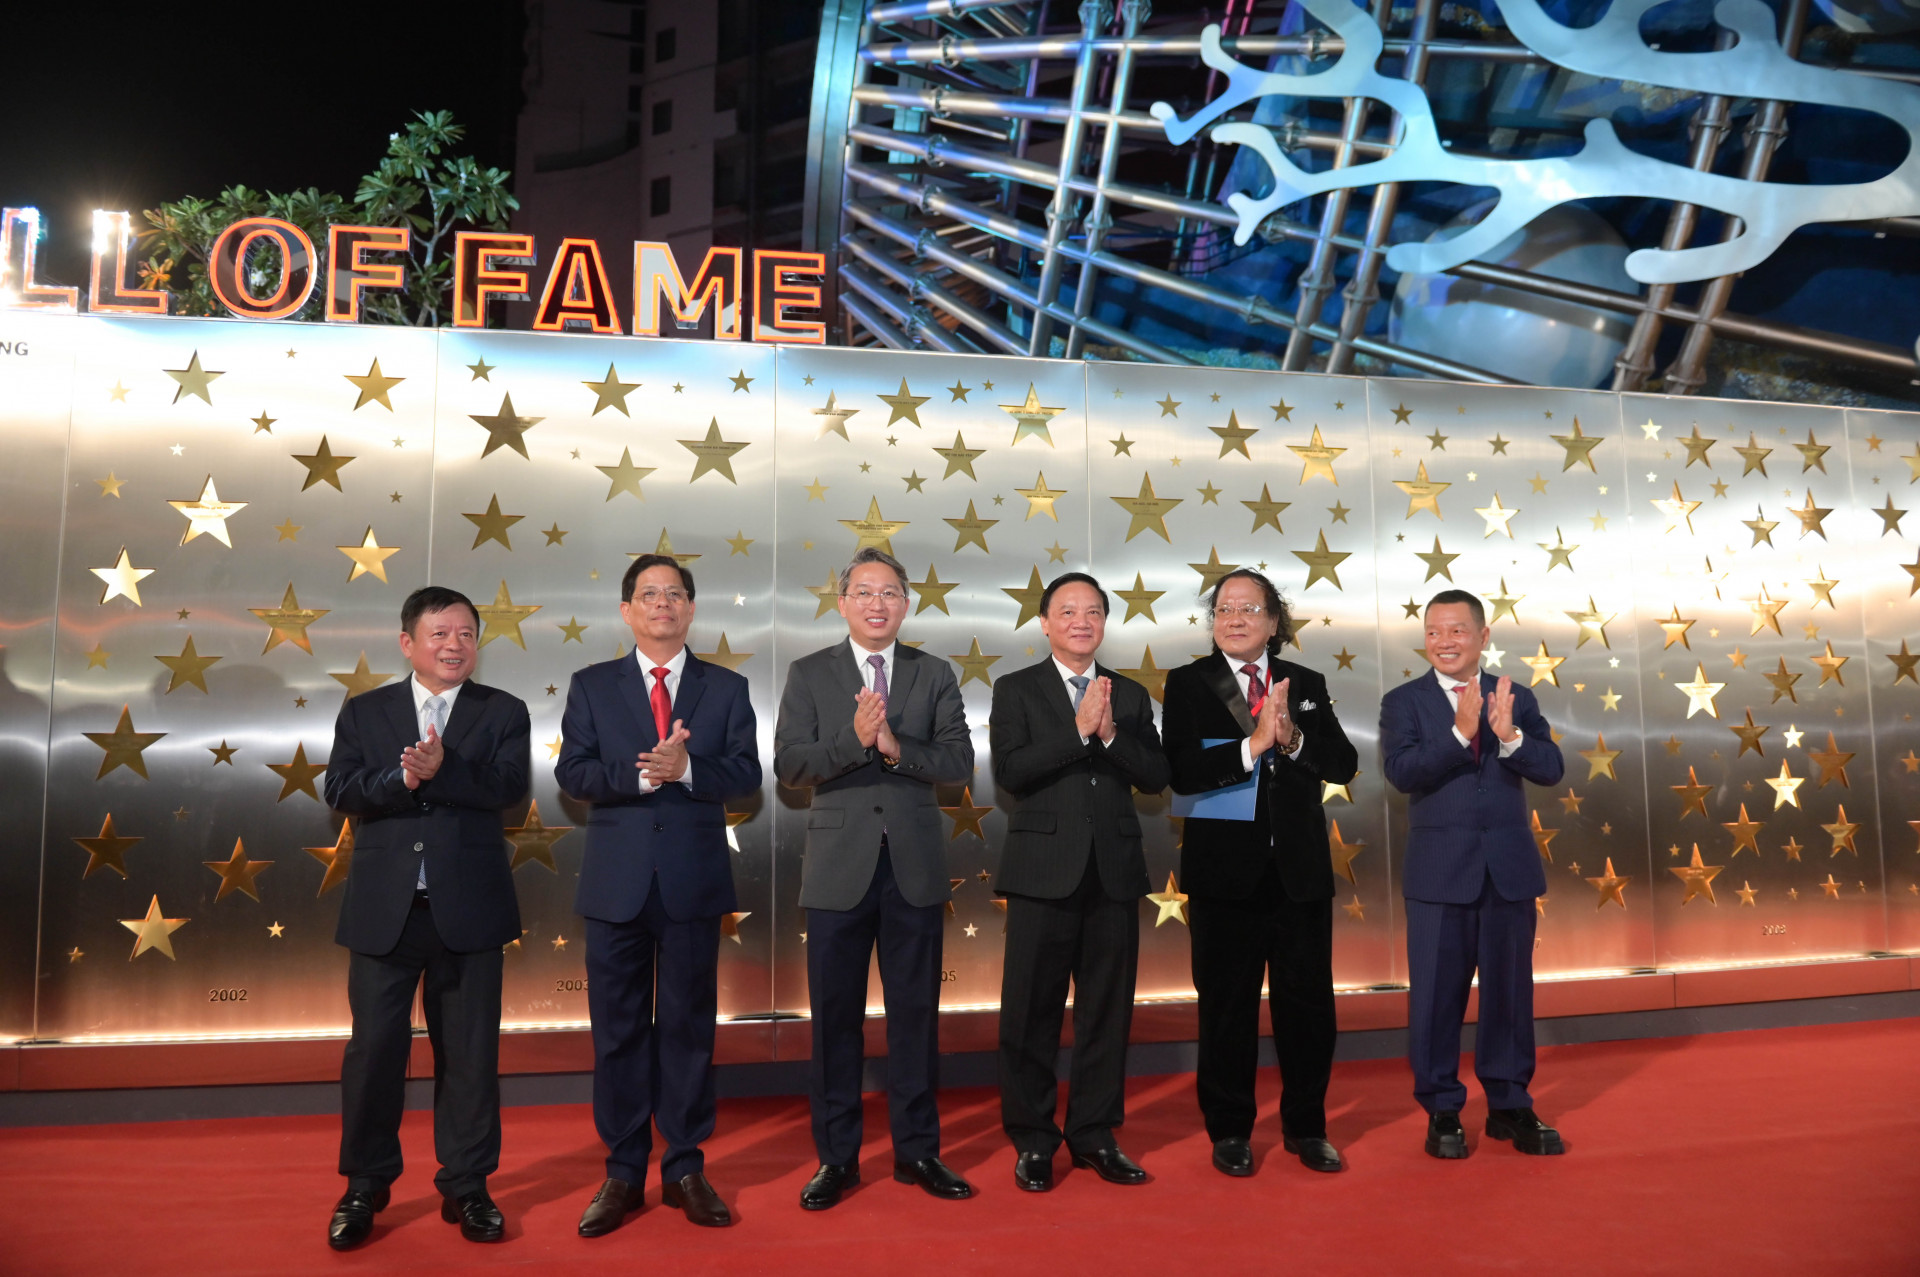 Các vị đại biểu khánh thành Bức tường danh vọng - công trình ghi tên những tác tác giả, nghệ sĩ, người làm phim của nền điện ảnh Việt Nam được vinh dự nhận giải thưởng Cánh diều.